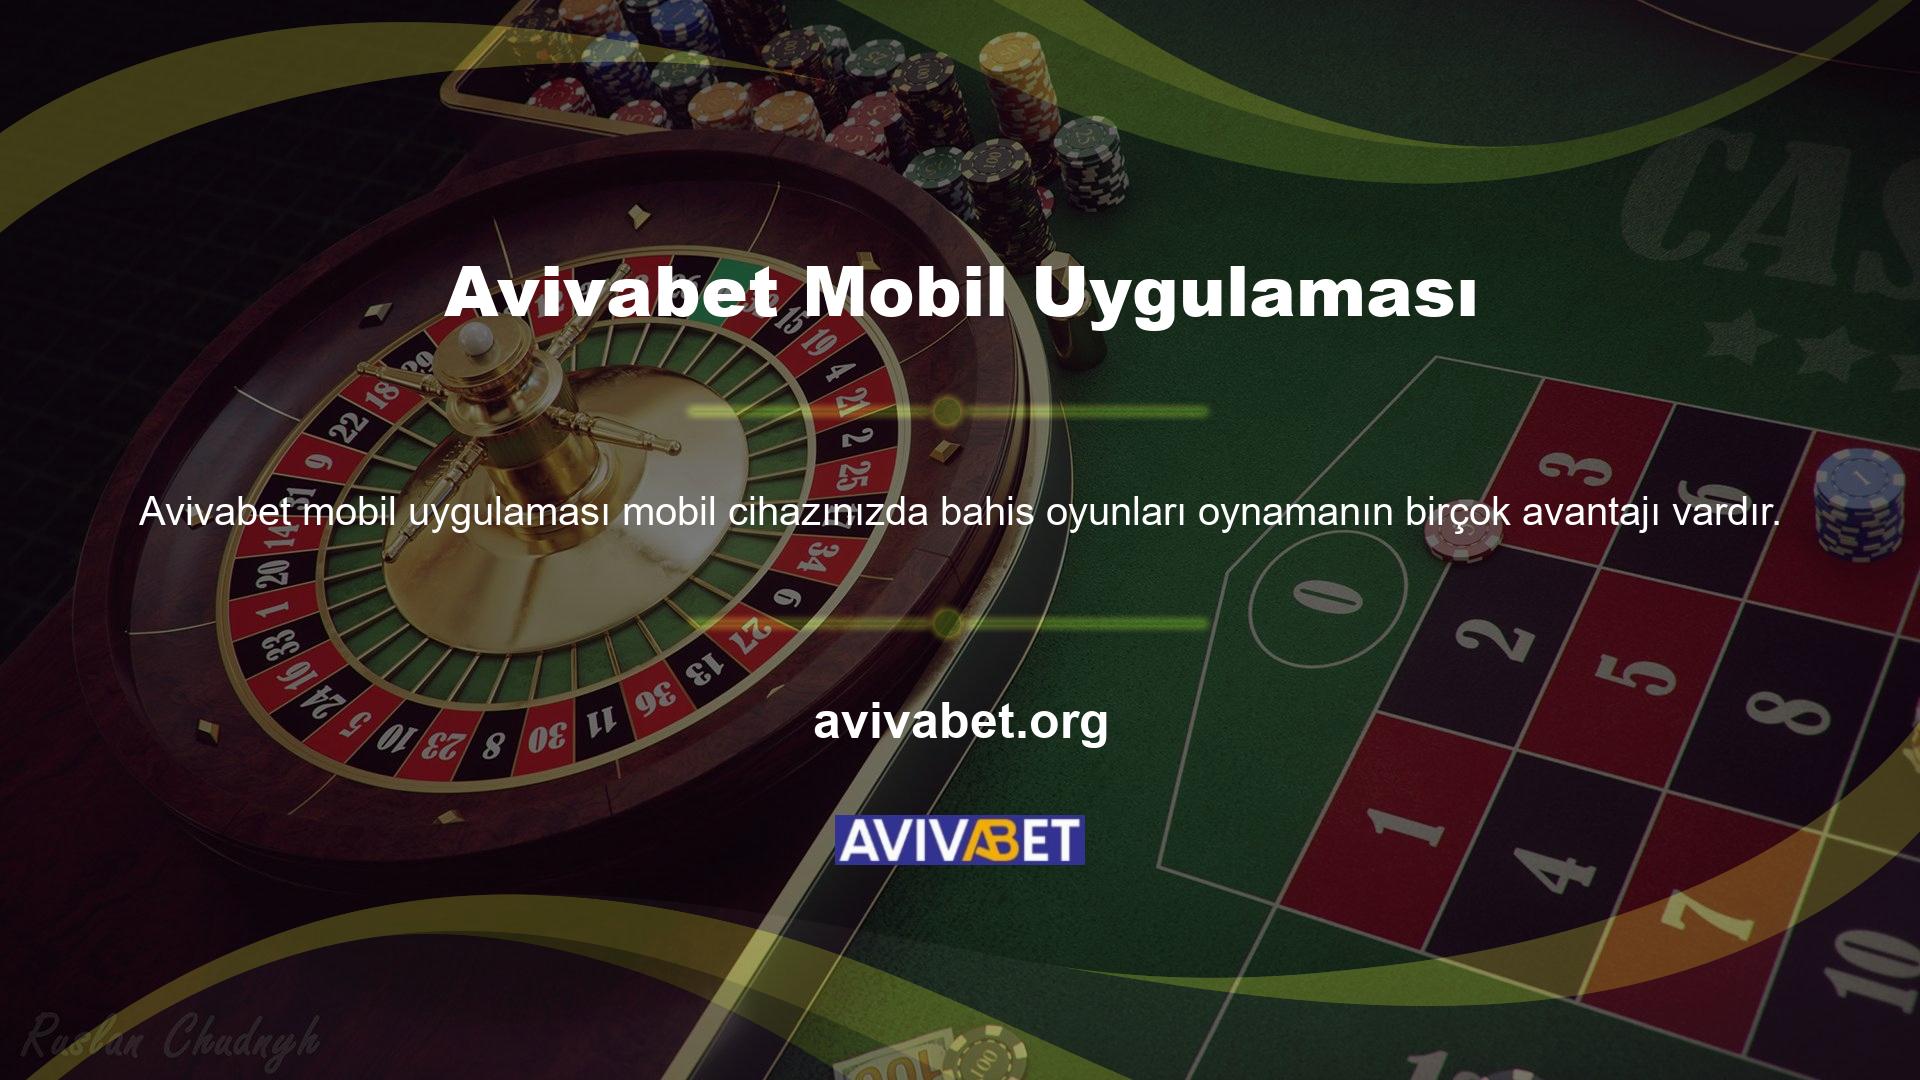 Avivabet mobil uygulaması, oyunlara bahis oynamayı sevenler arasında popüler hale geldi